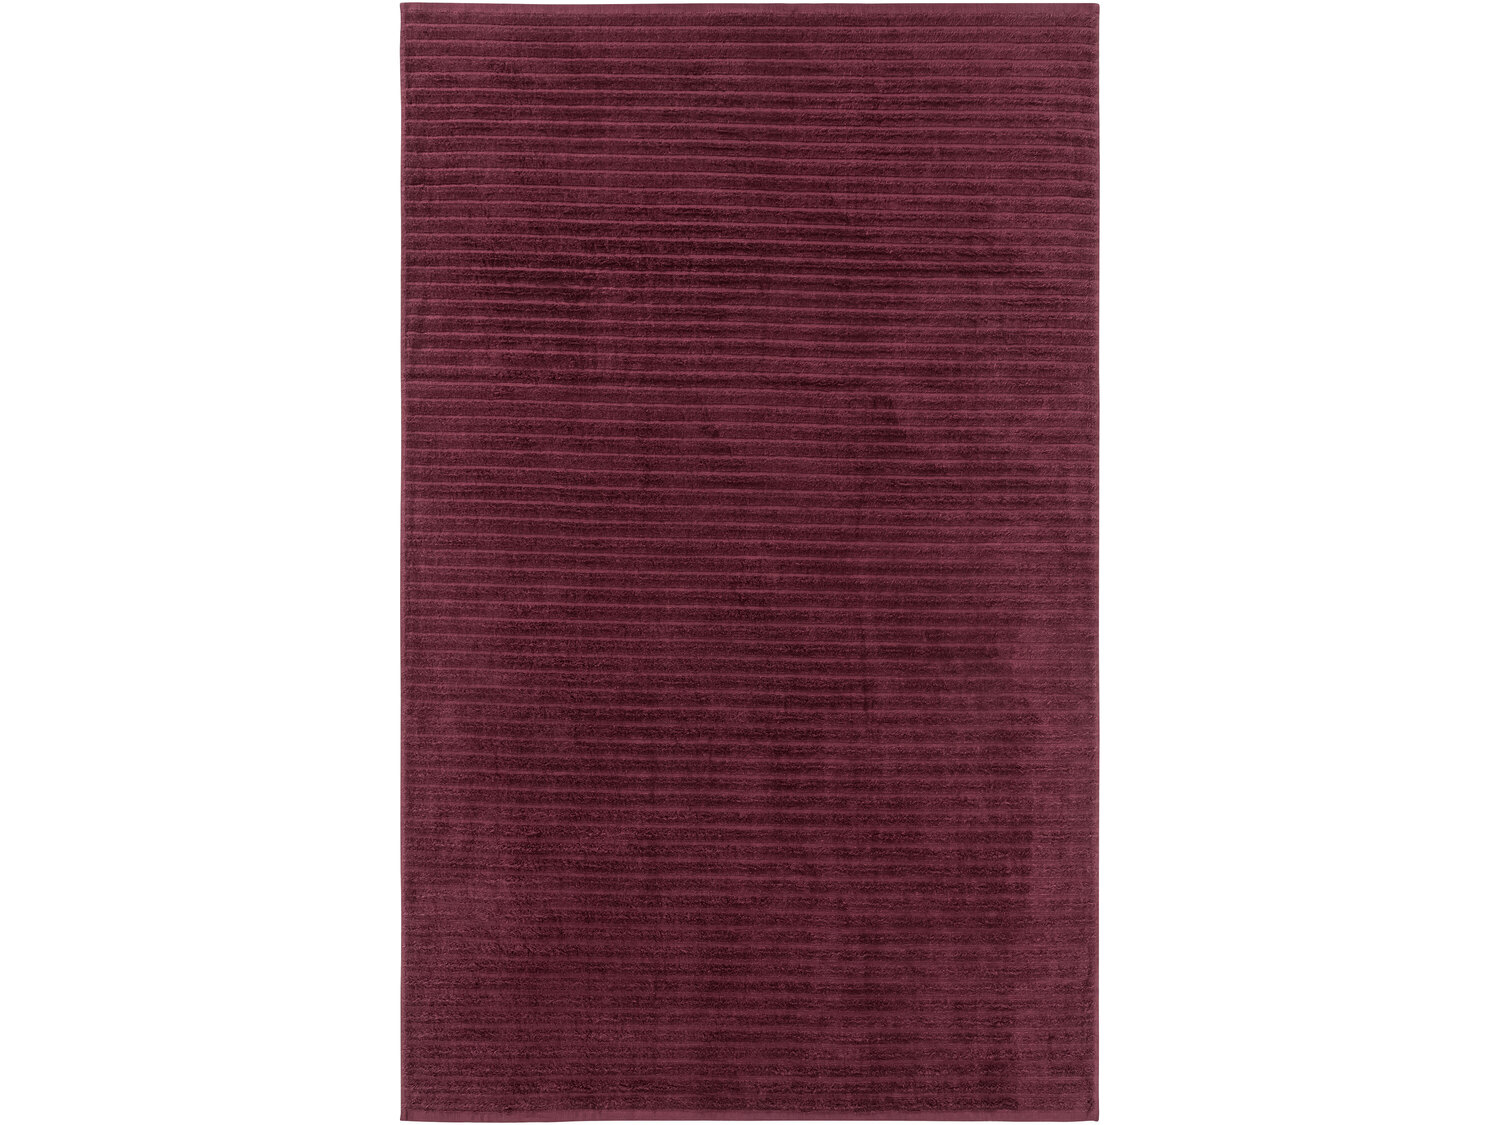 Ręcznik 100 x 150 cm Miomare, cena 34,99 PLN
- luksusowy ręcznik bawełniany
- ...